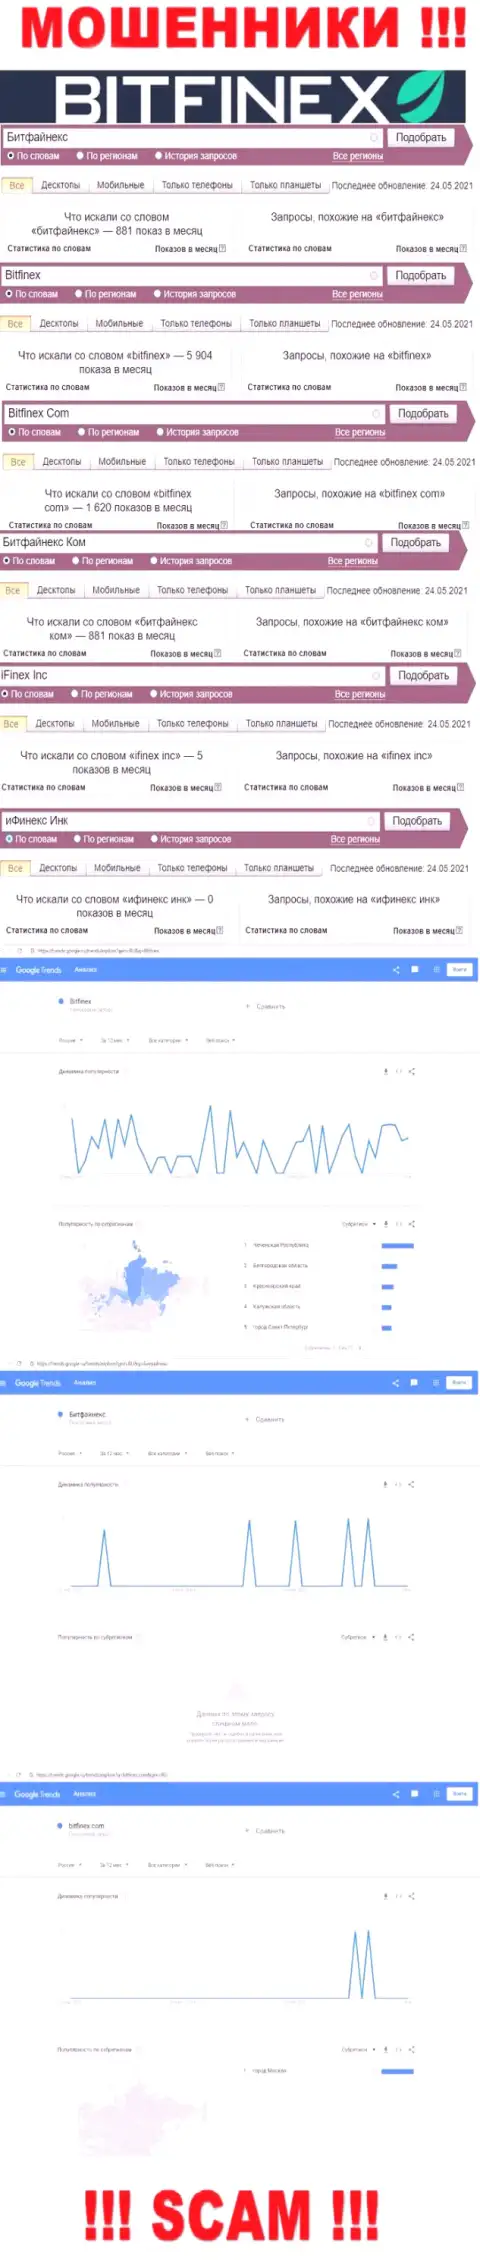 Суммарное число поисковых запросов в поисковиках всемирной интернет паутины по бренду мошенников Бит Файнекс